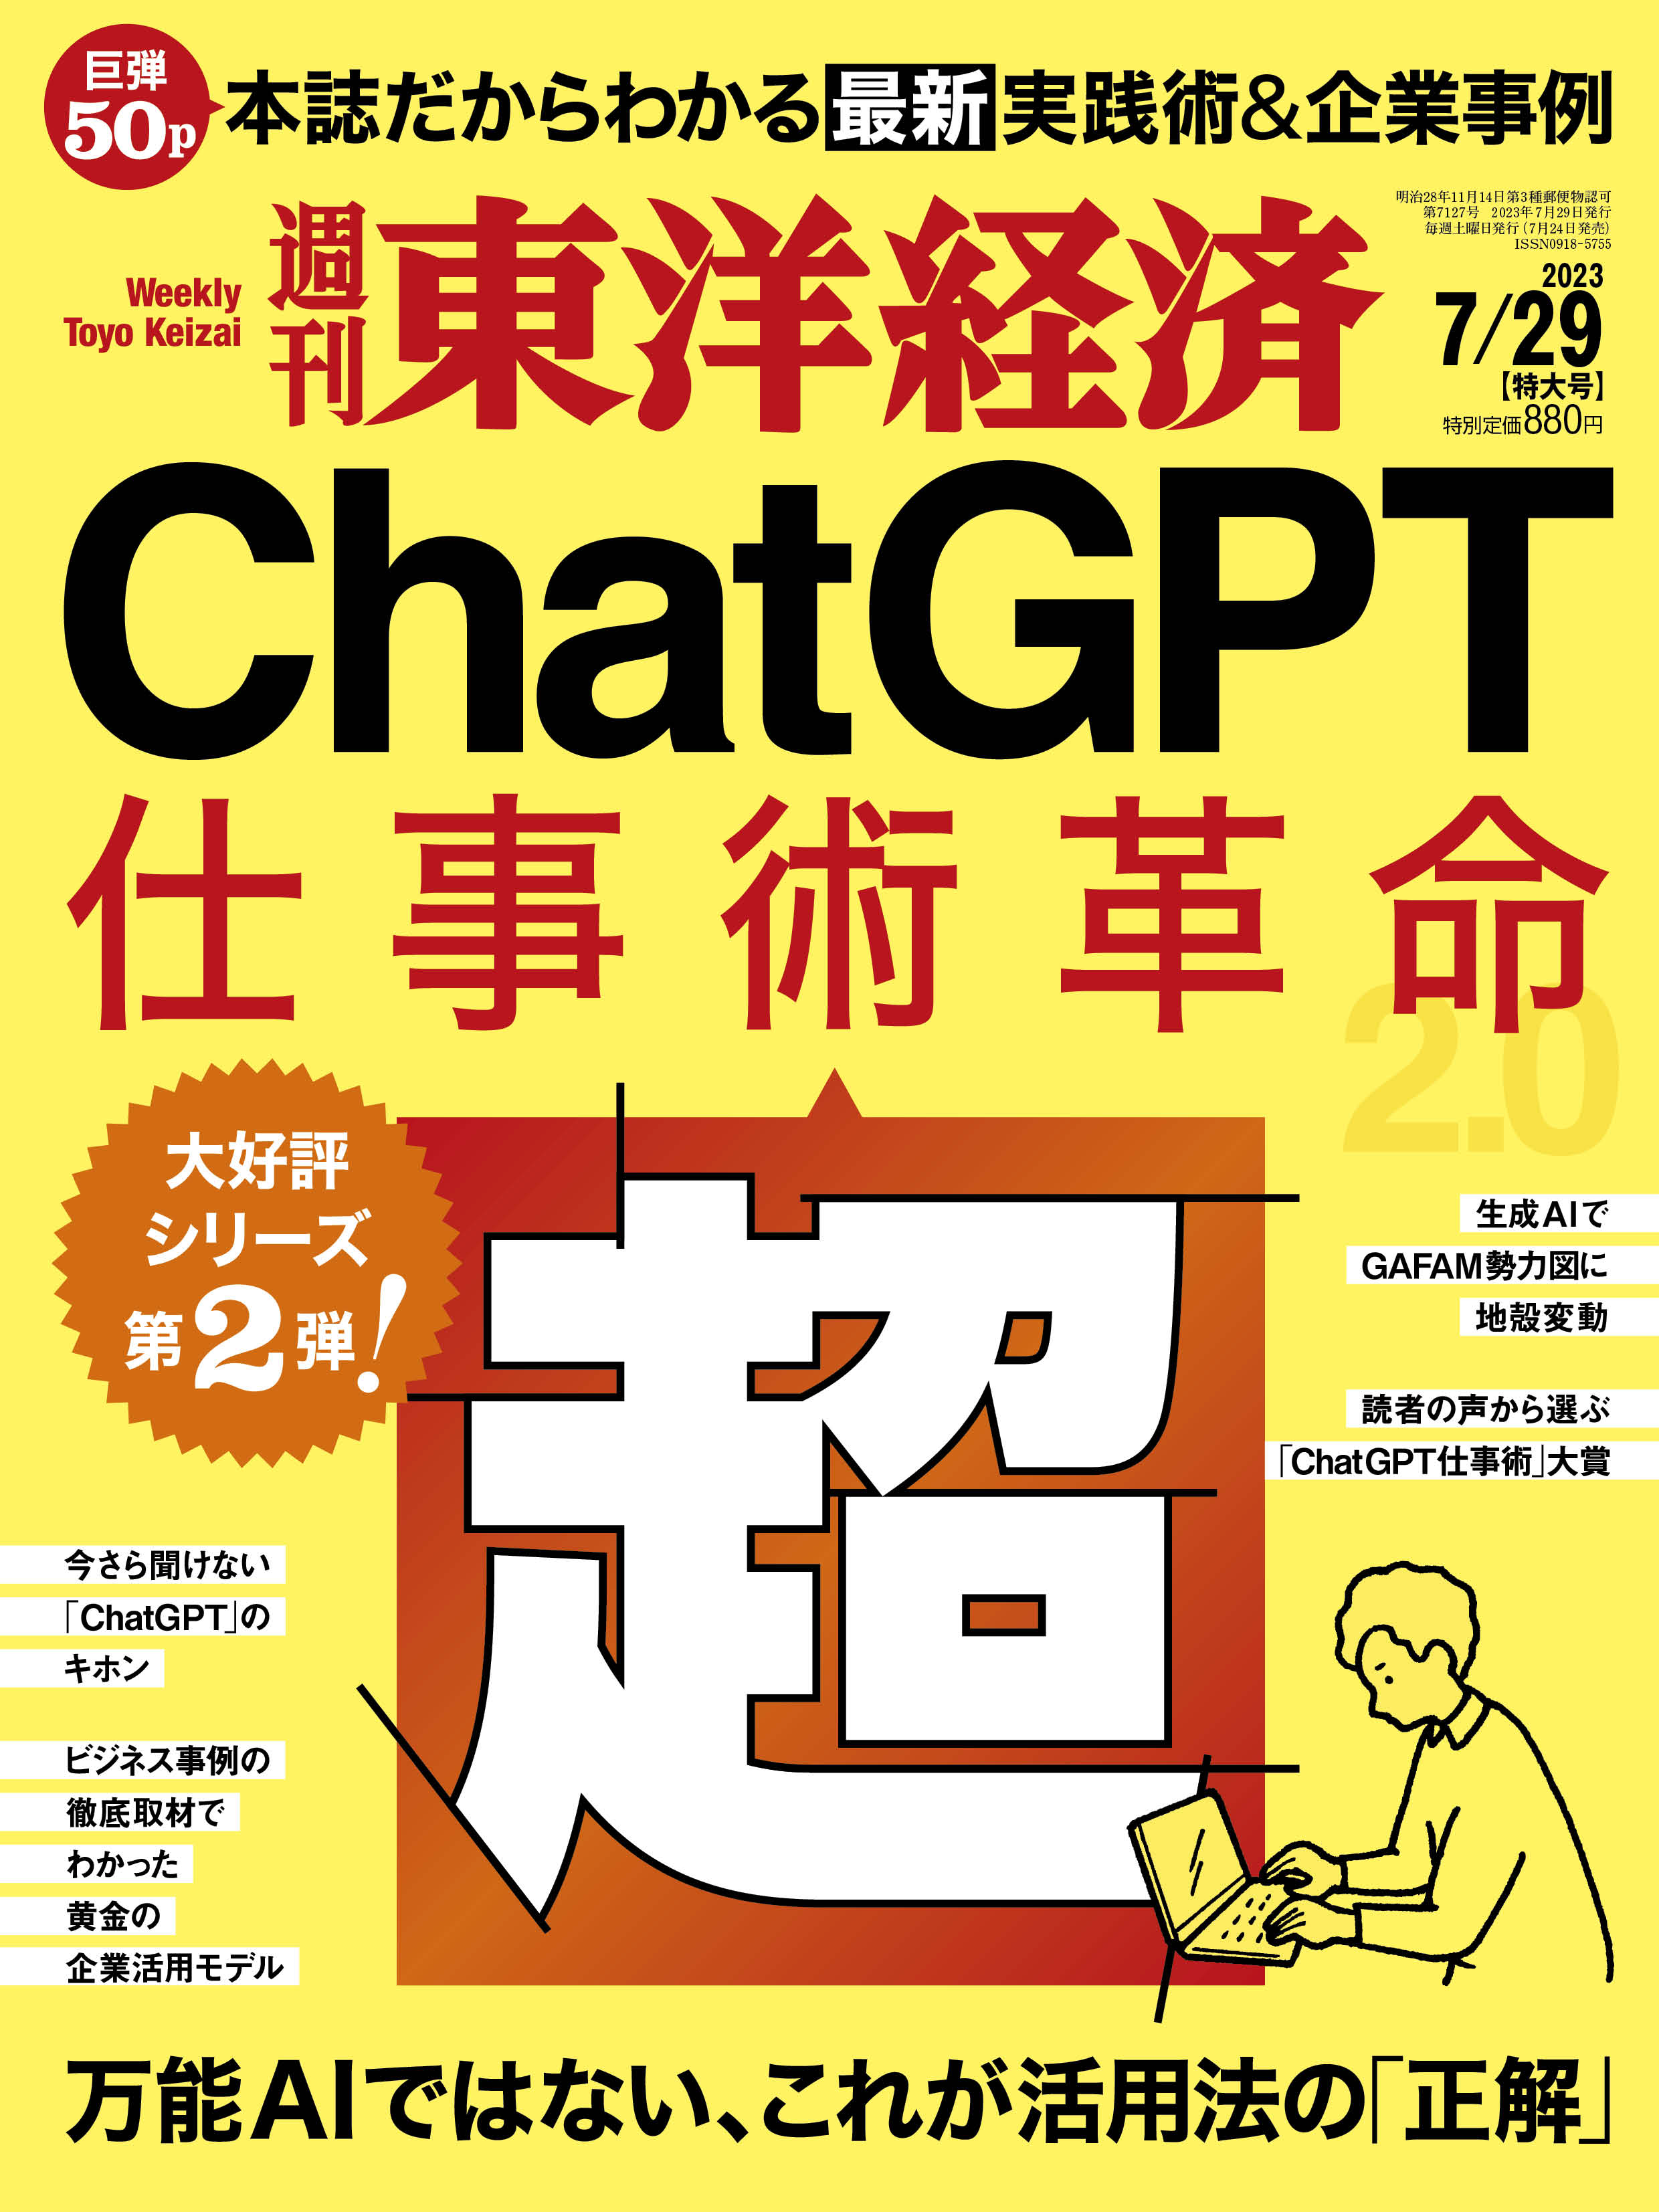 週刊東洋経済7月29日号「ChatGPT 超・仕事術革命」異例の初版部数で7月